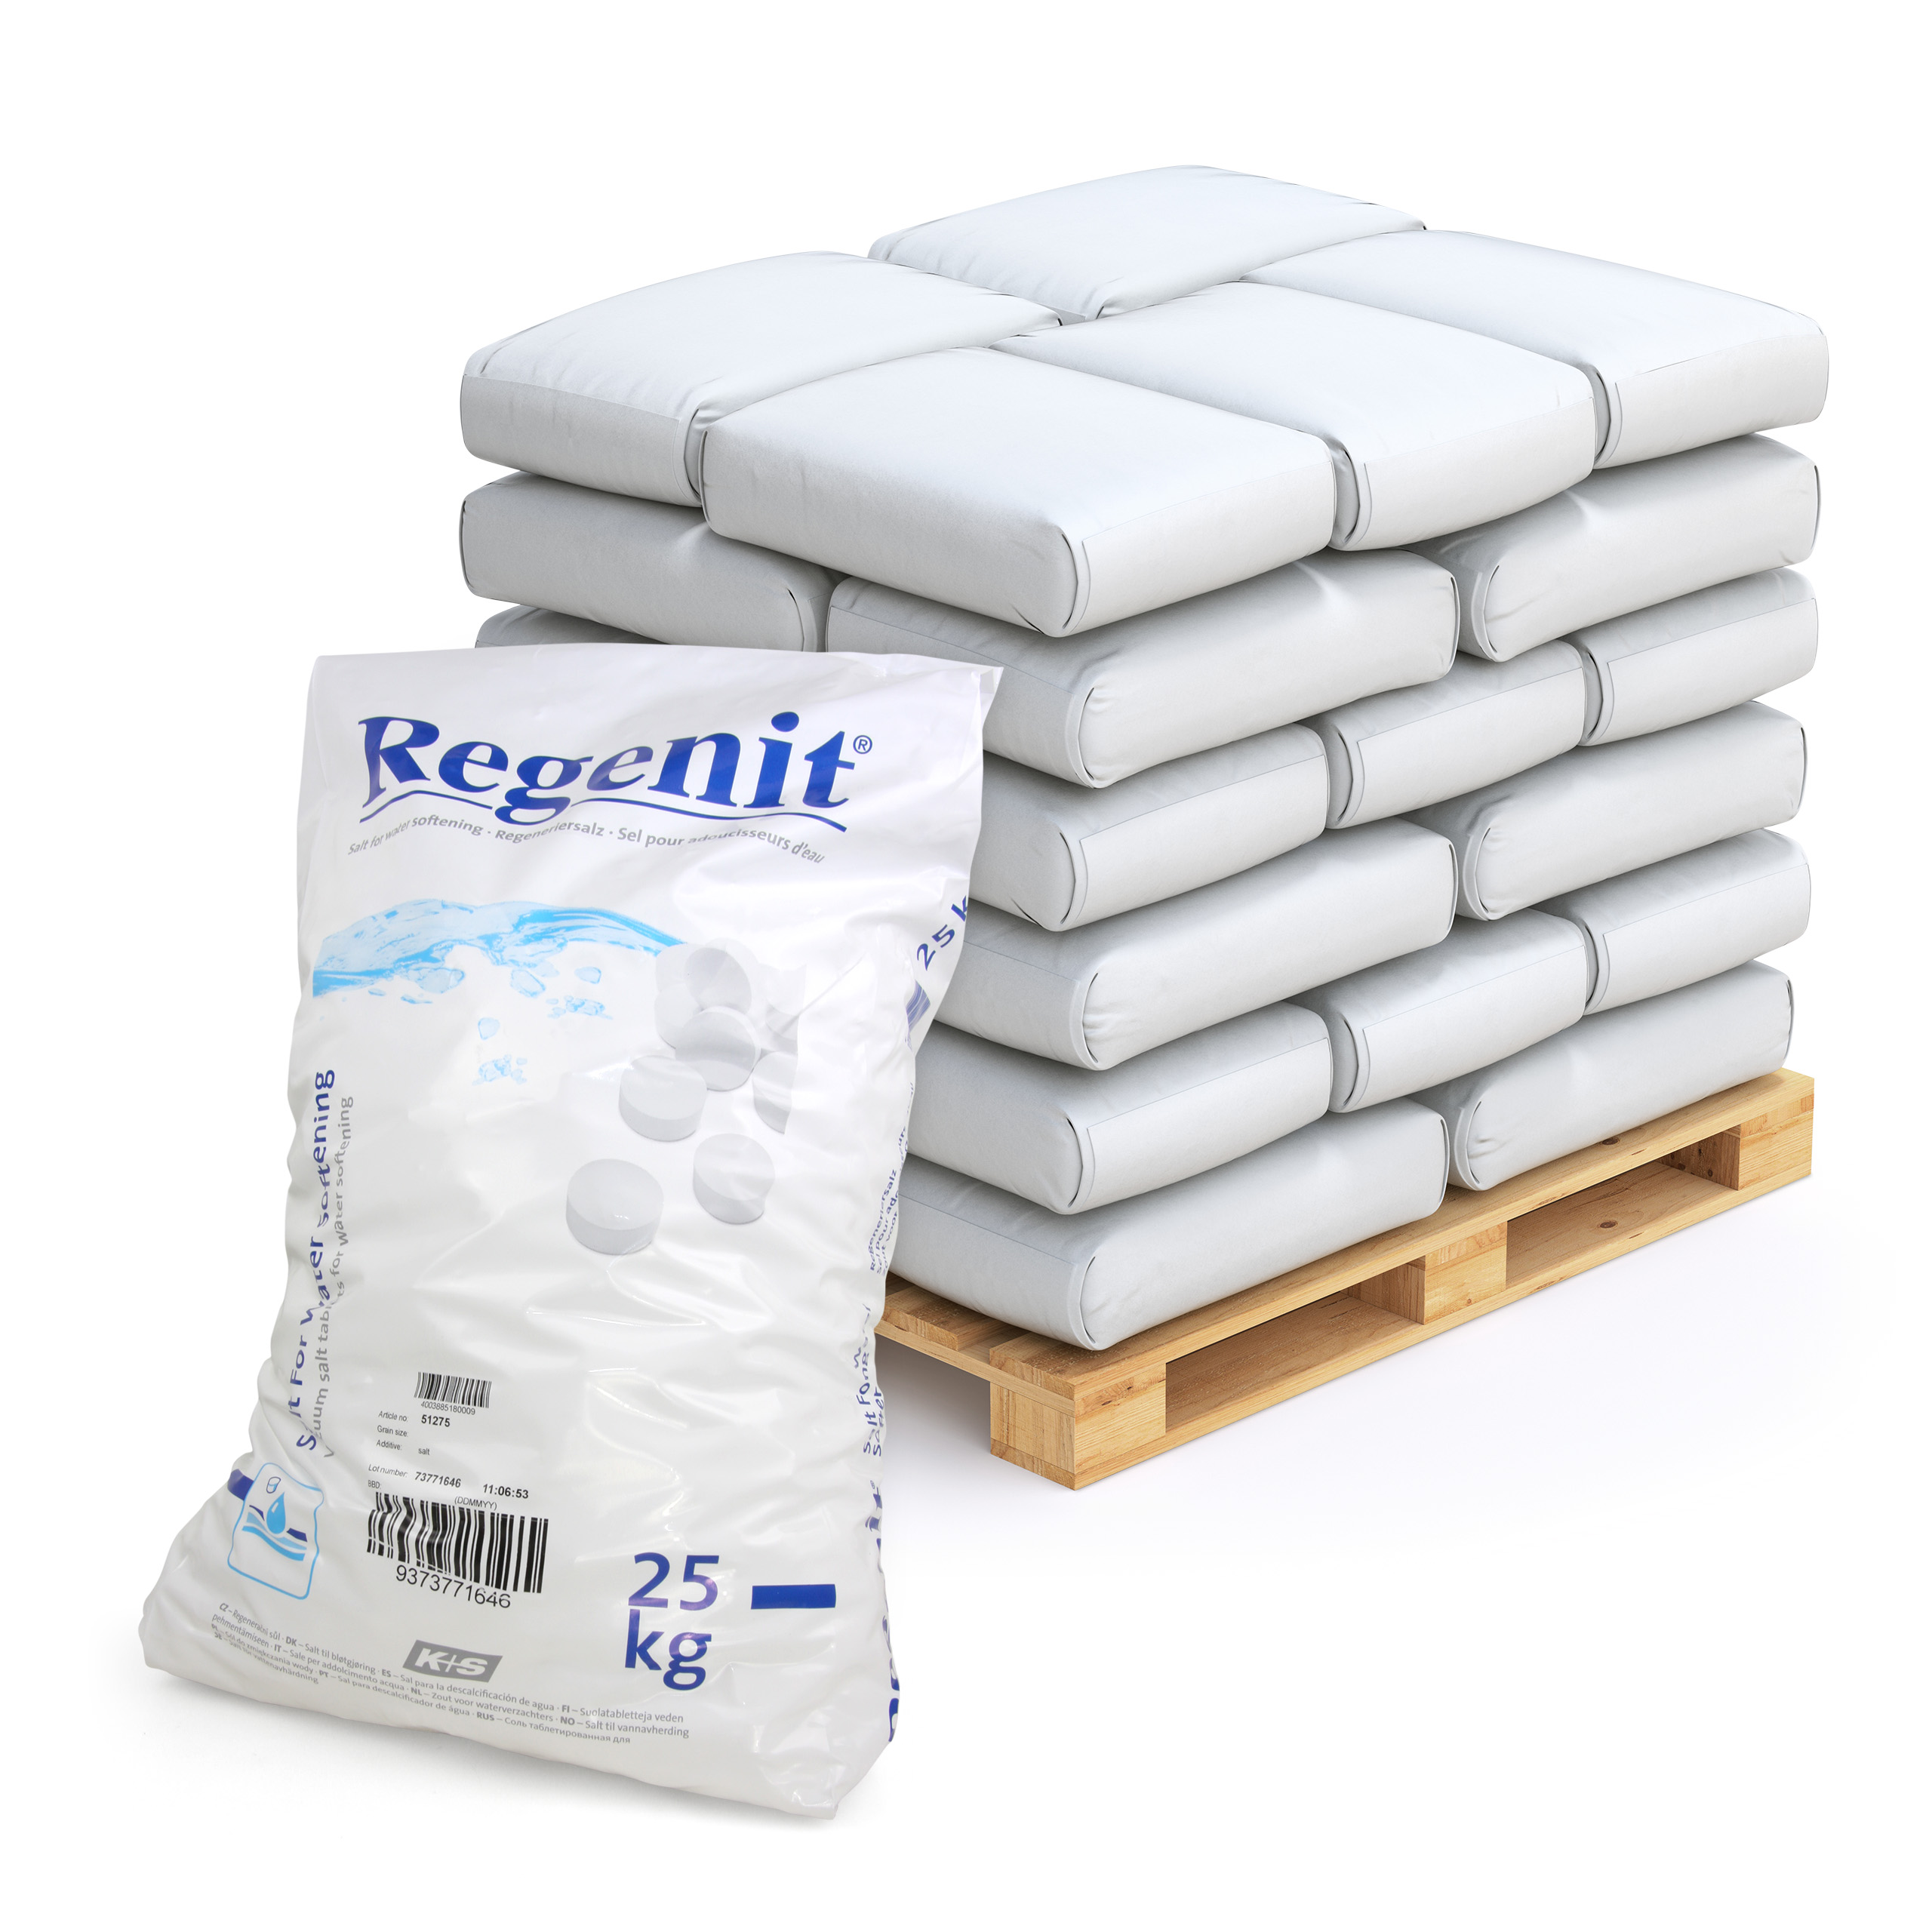 25 kg Comprimés de sel évaporé Regenit® pour la régénération des adoucisseurs d'eau